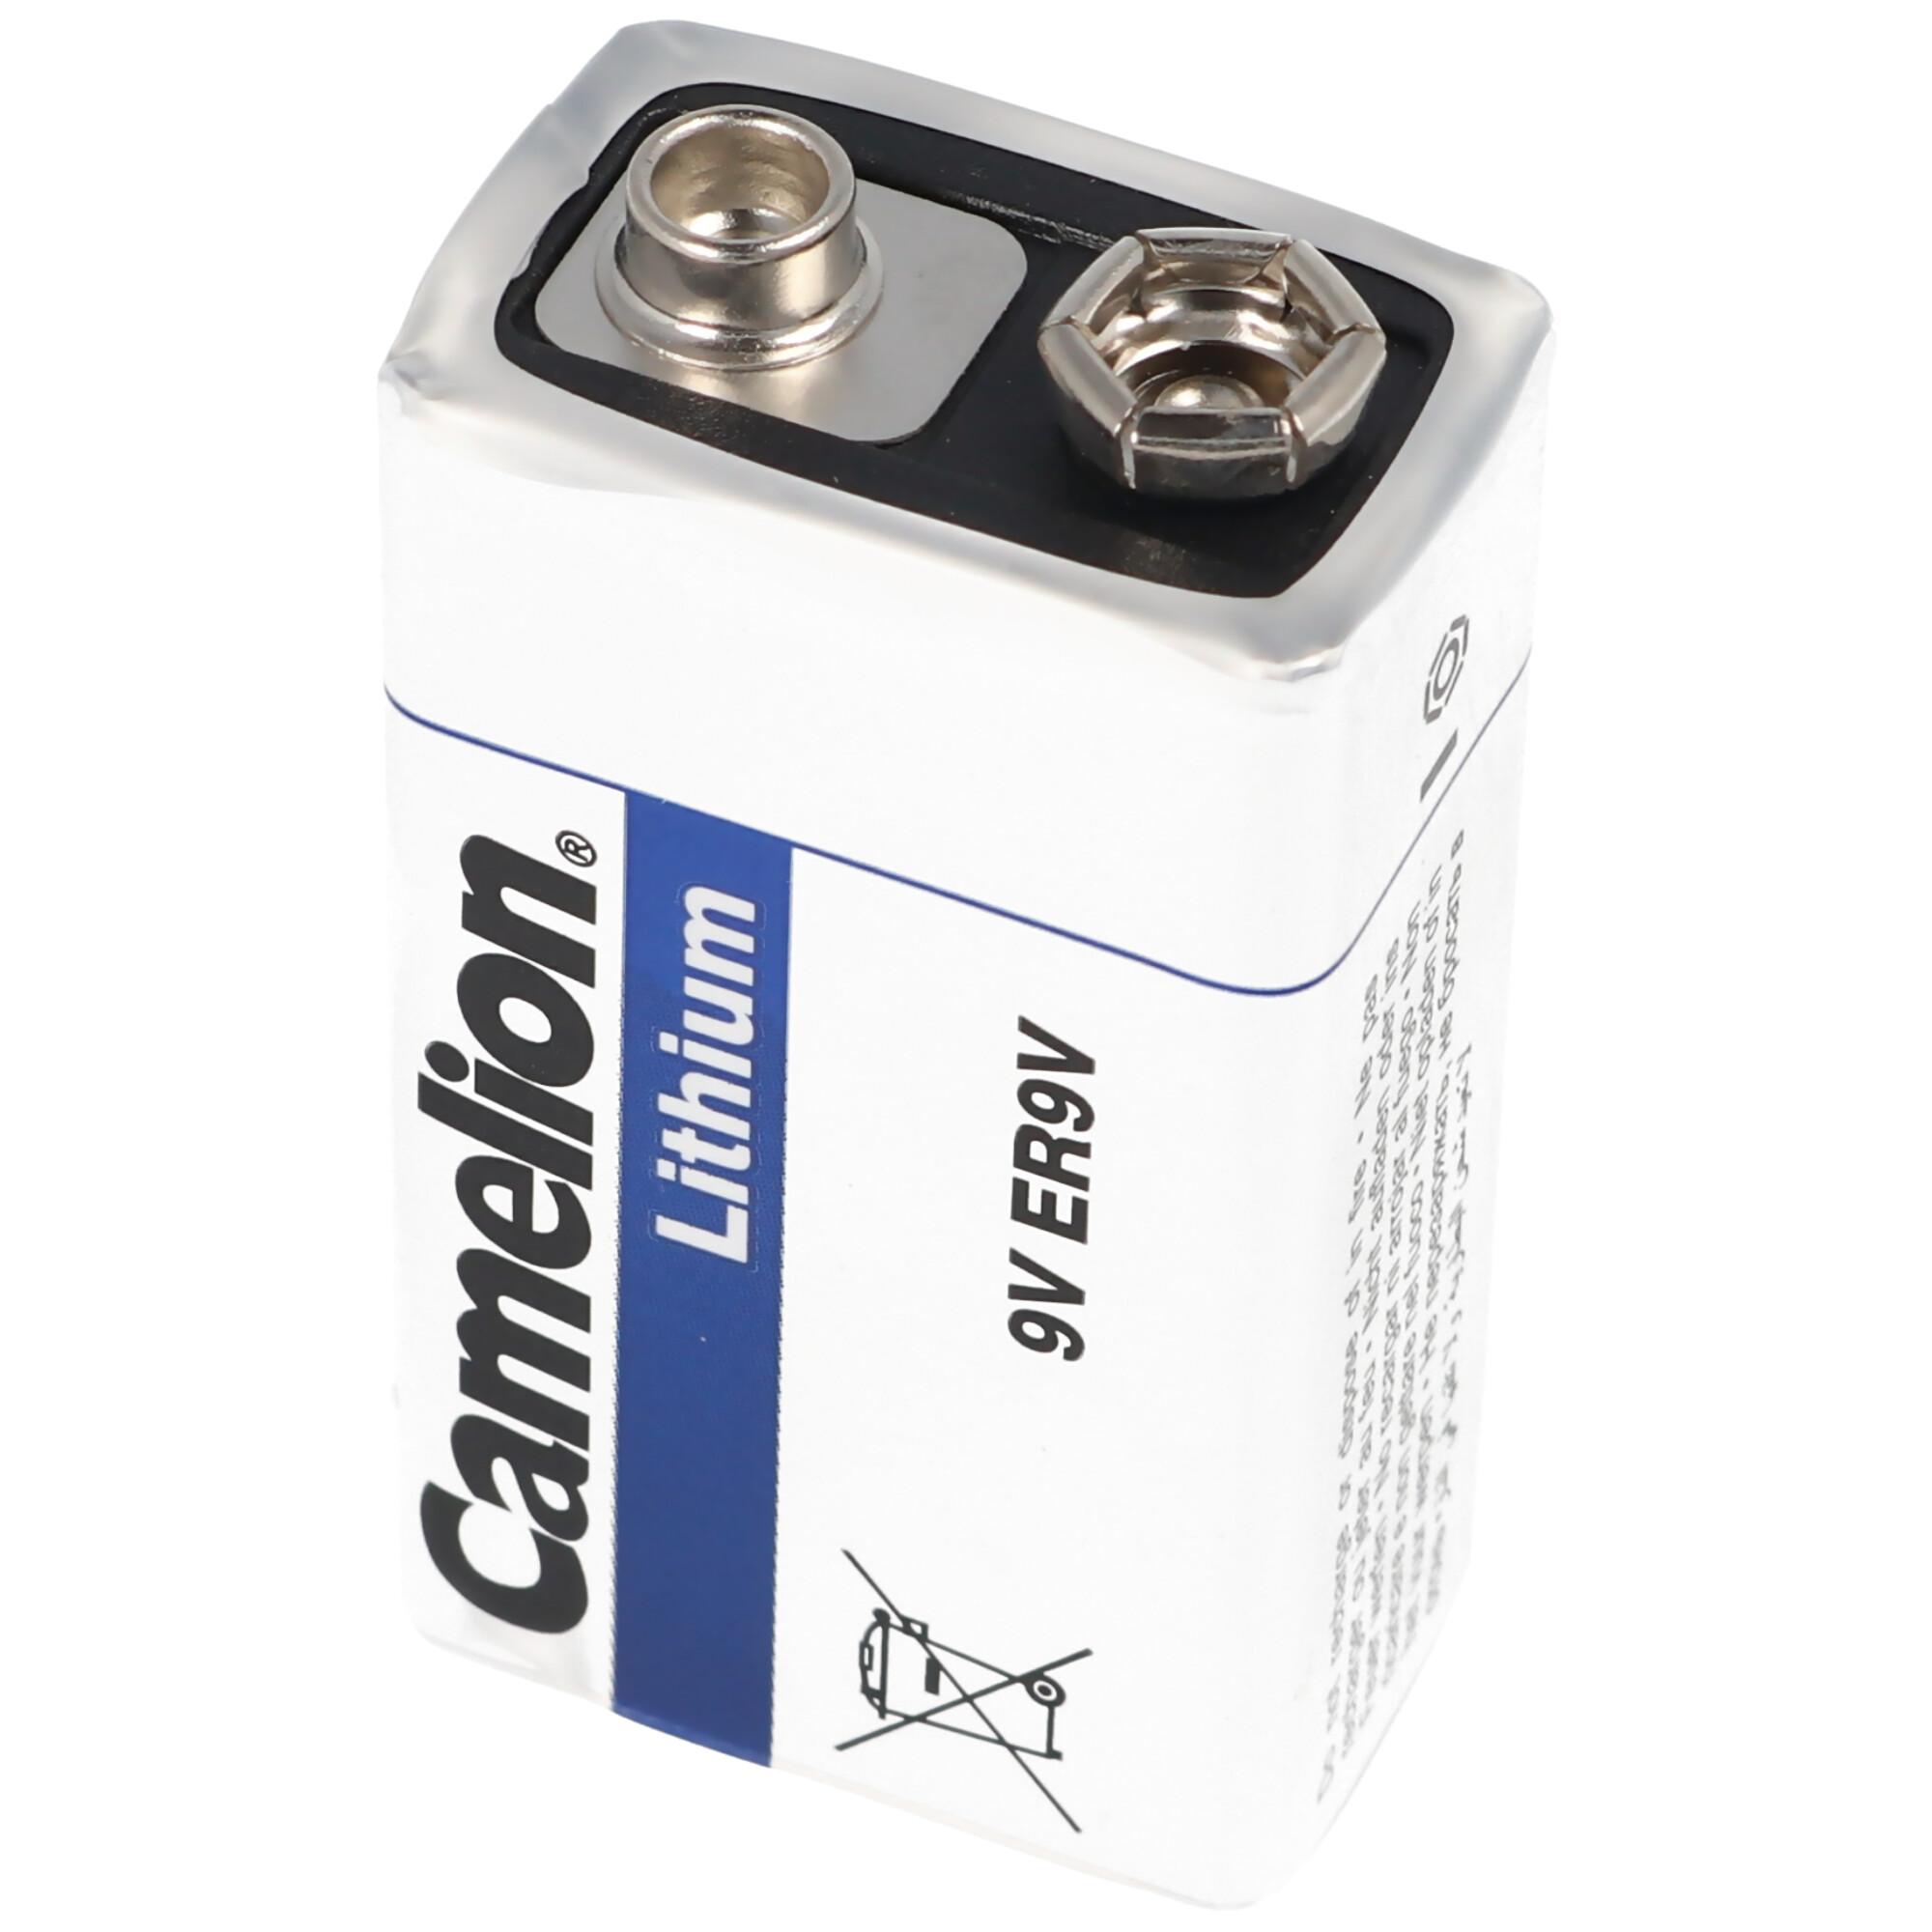 Marken Lithium Batterie 9 Volt, E-Block, ER9V, U9VL, U9VL-J, U9-VL, U-9VL ideal für Rauchmelder, Messgeräte